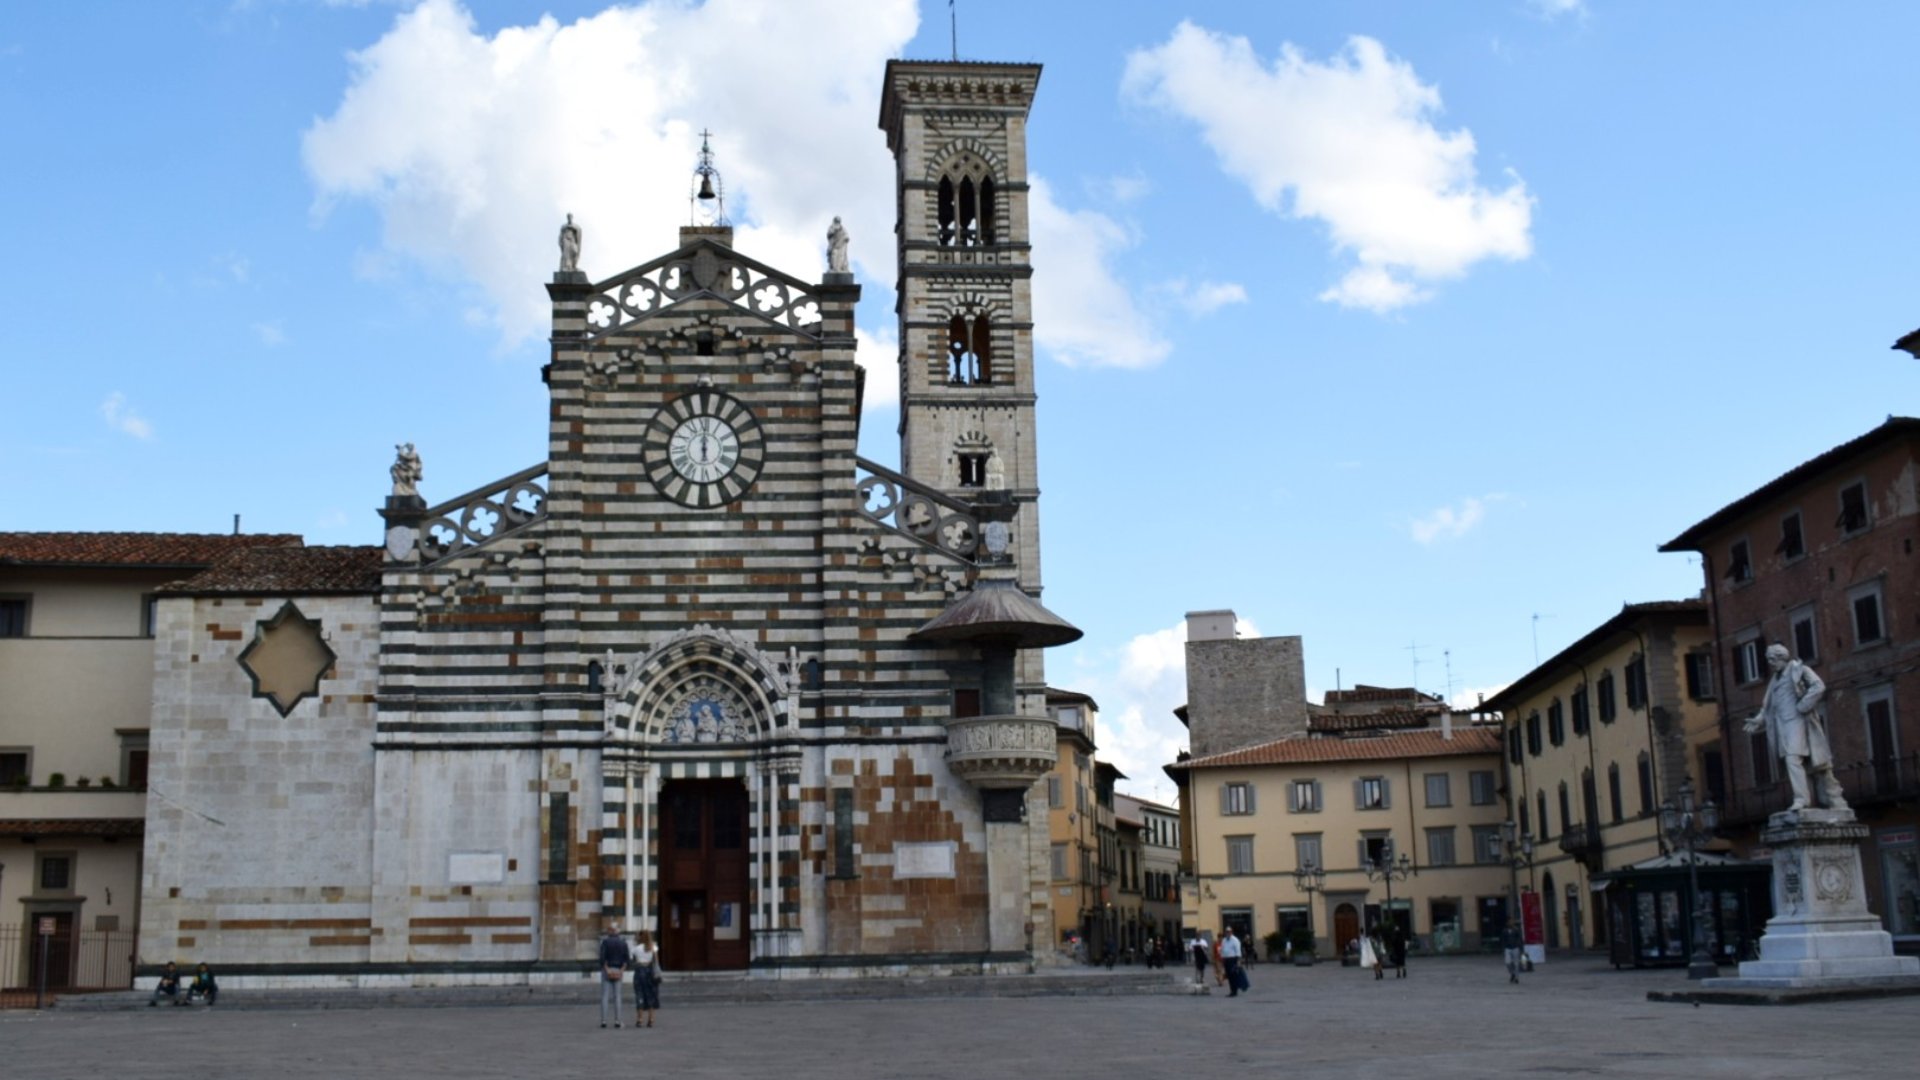 Piazza del Duomo, Prato